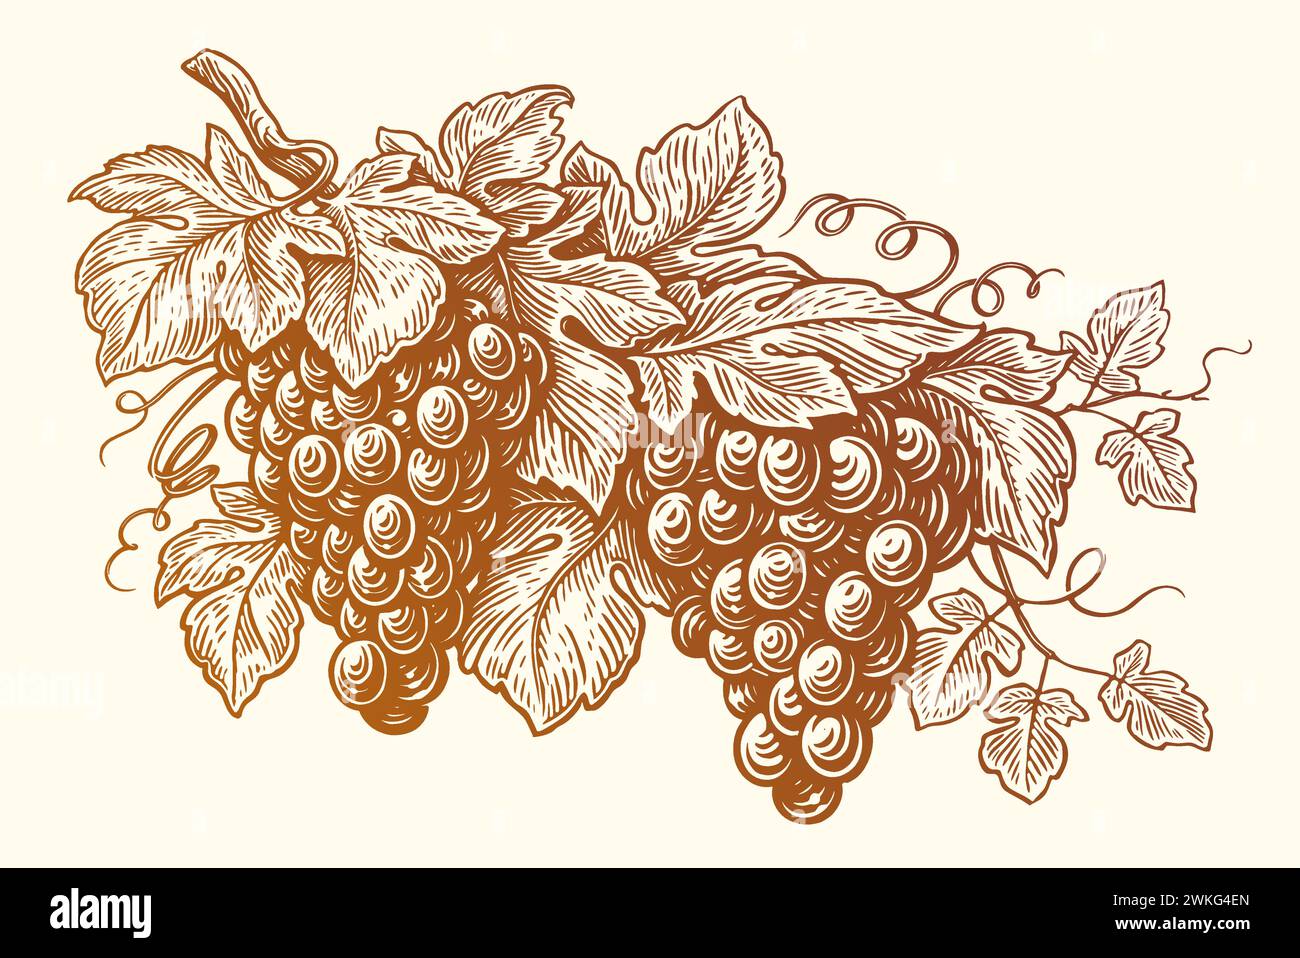 Handgezogener Traubenzweig mit Blättern. Weinberg, Obst, Gartenpflanze, Bio-Wein. Abbildung der Vektorskizze Stock Vektor